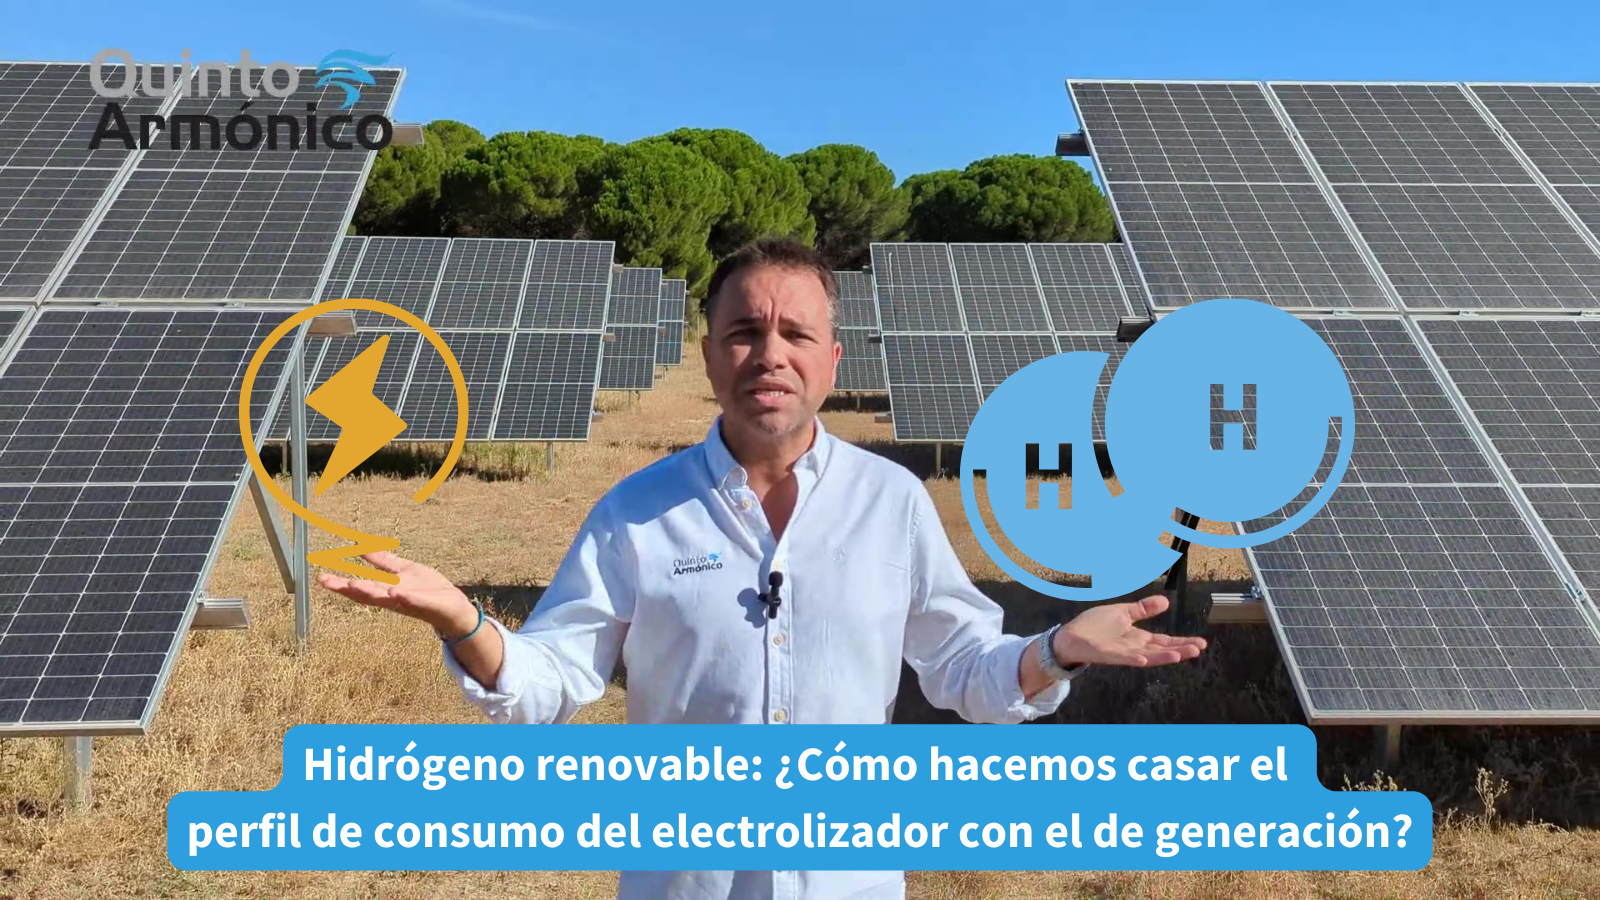 Hidrógeno renovable: ¿Cómo hacemos casar el perfil de consumo del electrolizador con el de generación?